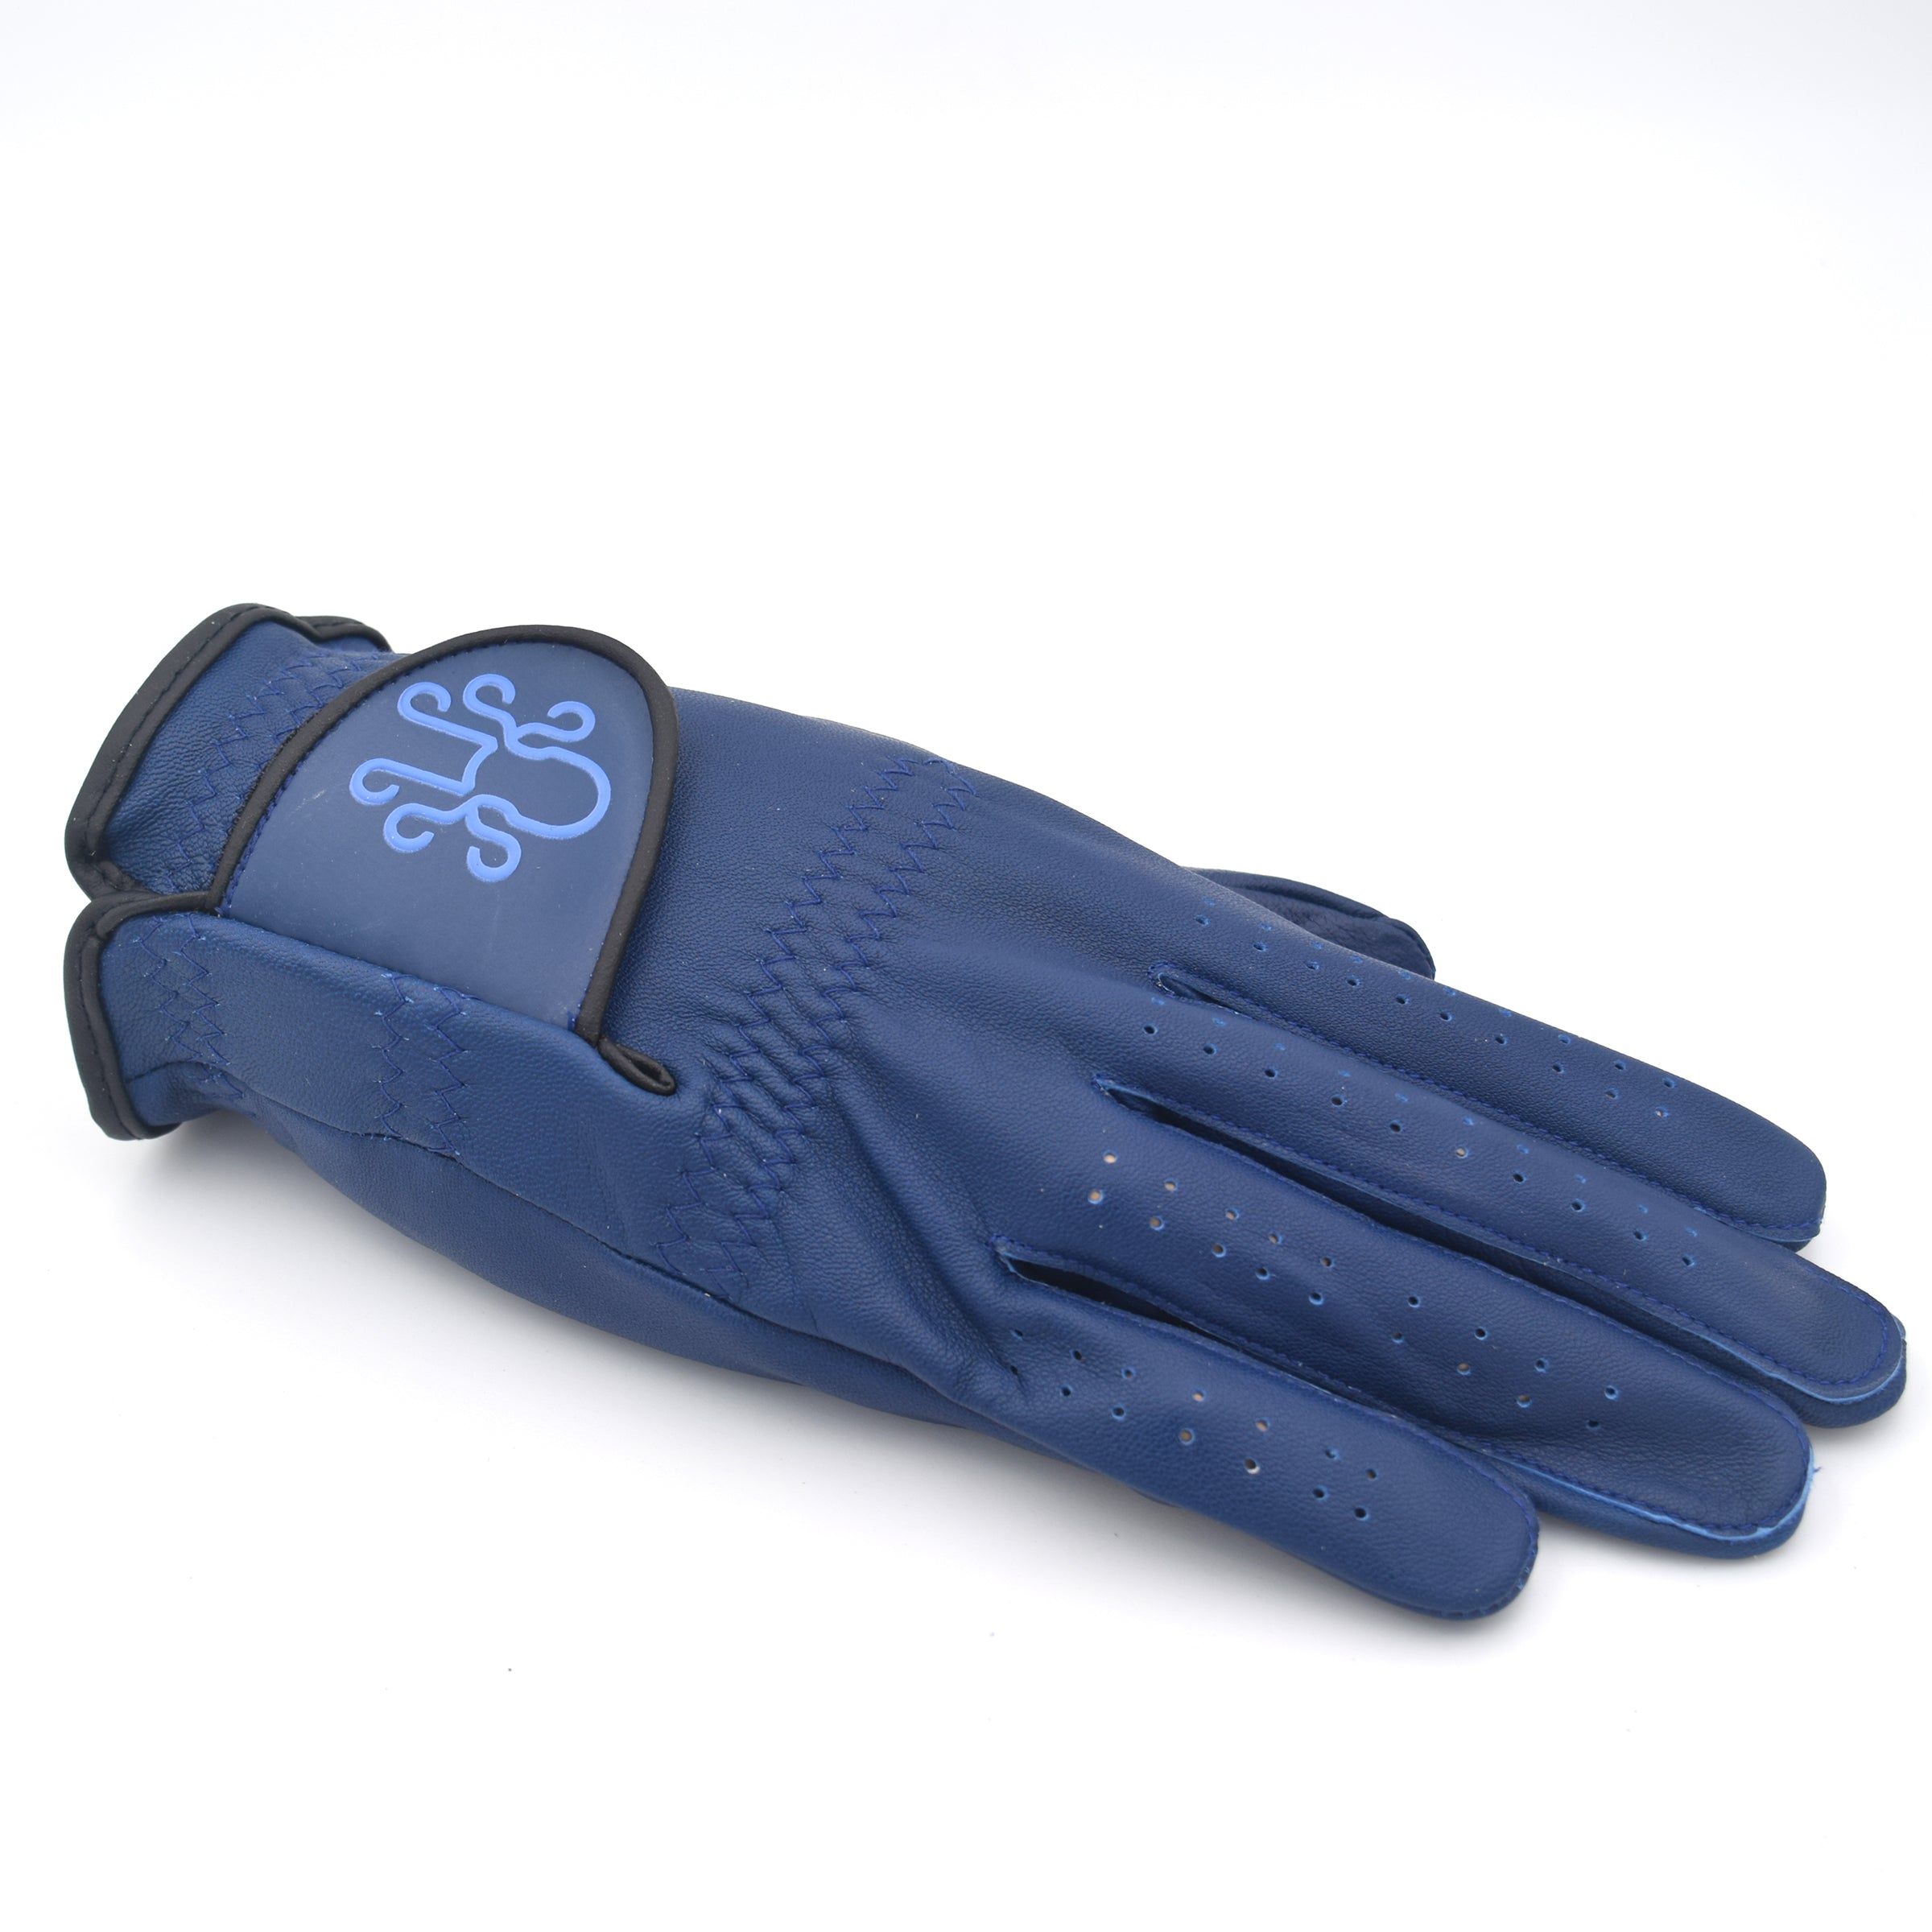 Kraken Golf Glove - Navy